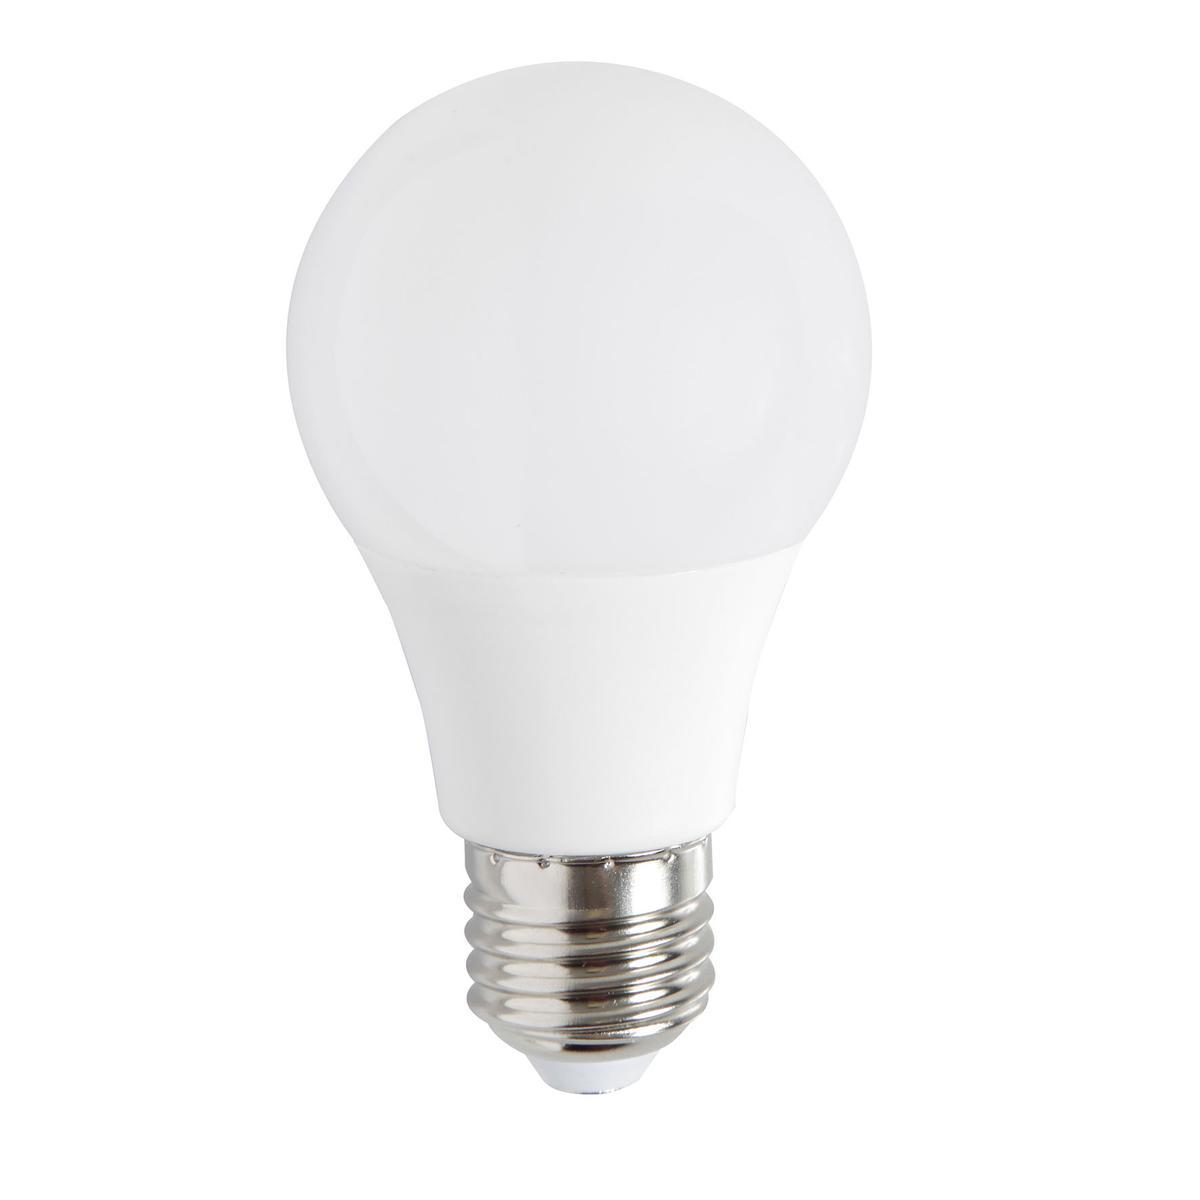 Ampoule LED E27 - 12 x 6 x 15 cm - Transparent